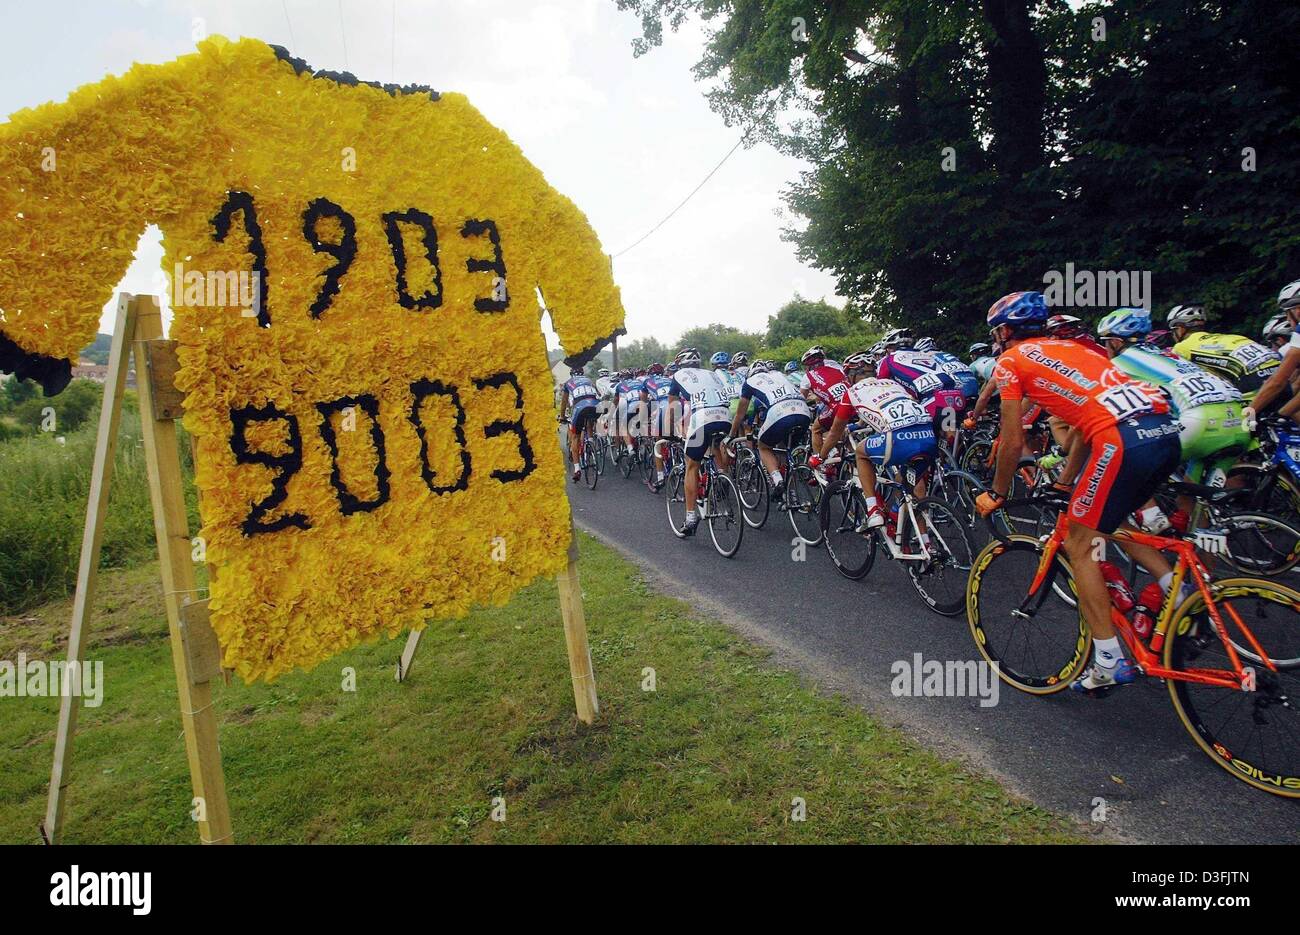 (Dpa) - i ciclisti passano da un grande 'maillot jaune" (maglia gialla) realizzata con fiori di carta segna il centenario del Tour de France durante la seconda tappa del Tour de France da La Ferte-sous-Jouarre a Sedan, Francia, 7 luglio 2003. Foto Stock